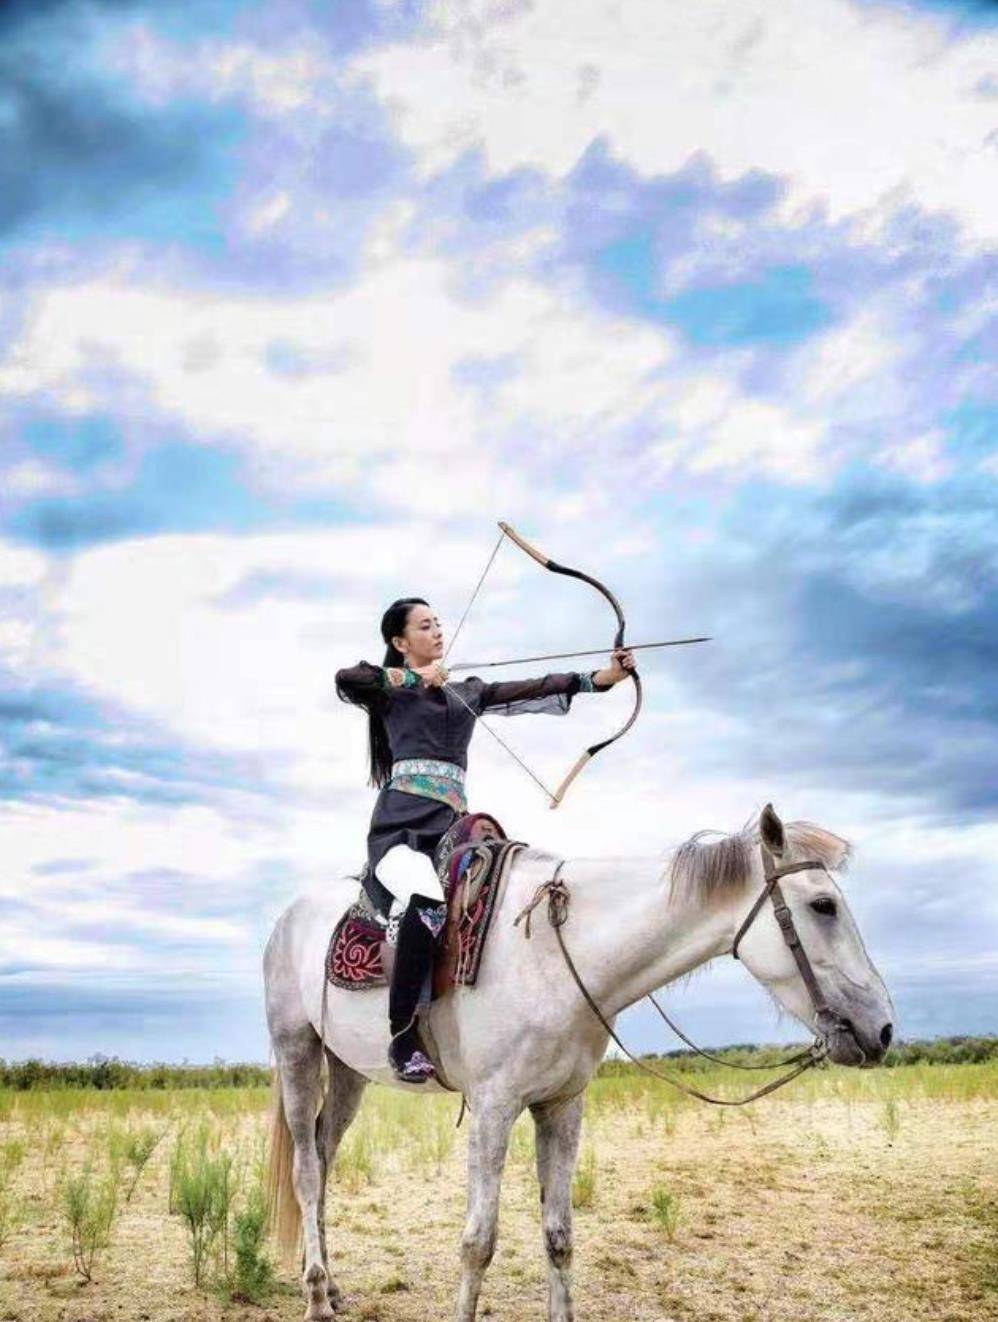 原创佟丽娅穿民族服草原骑马,拉弓射箭颇有古代女将军风范,英姿飒爽